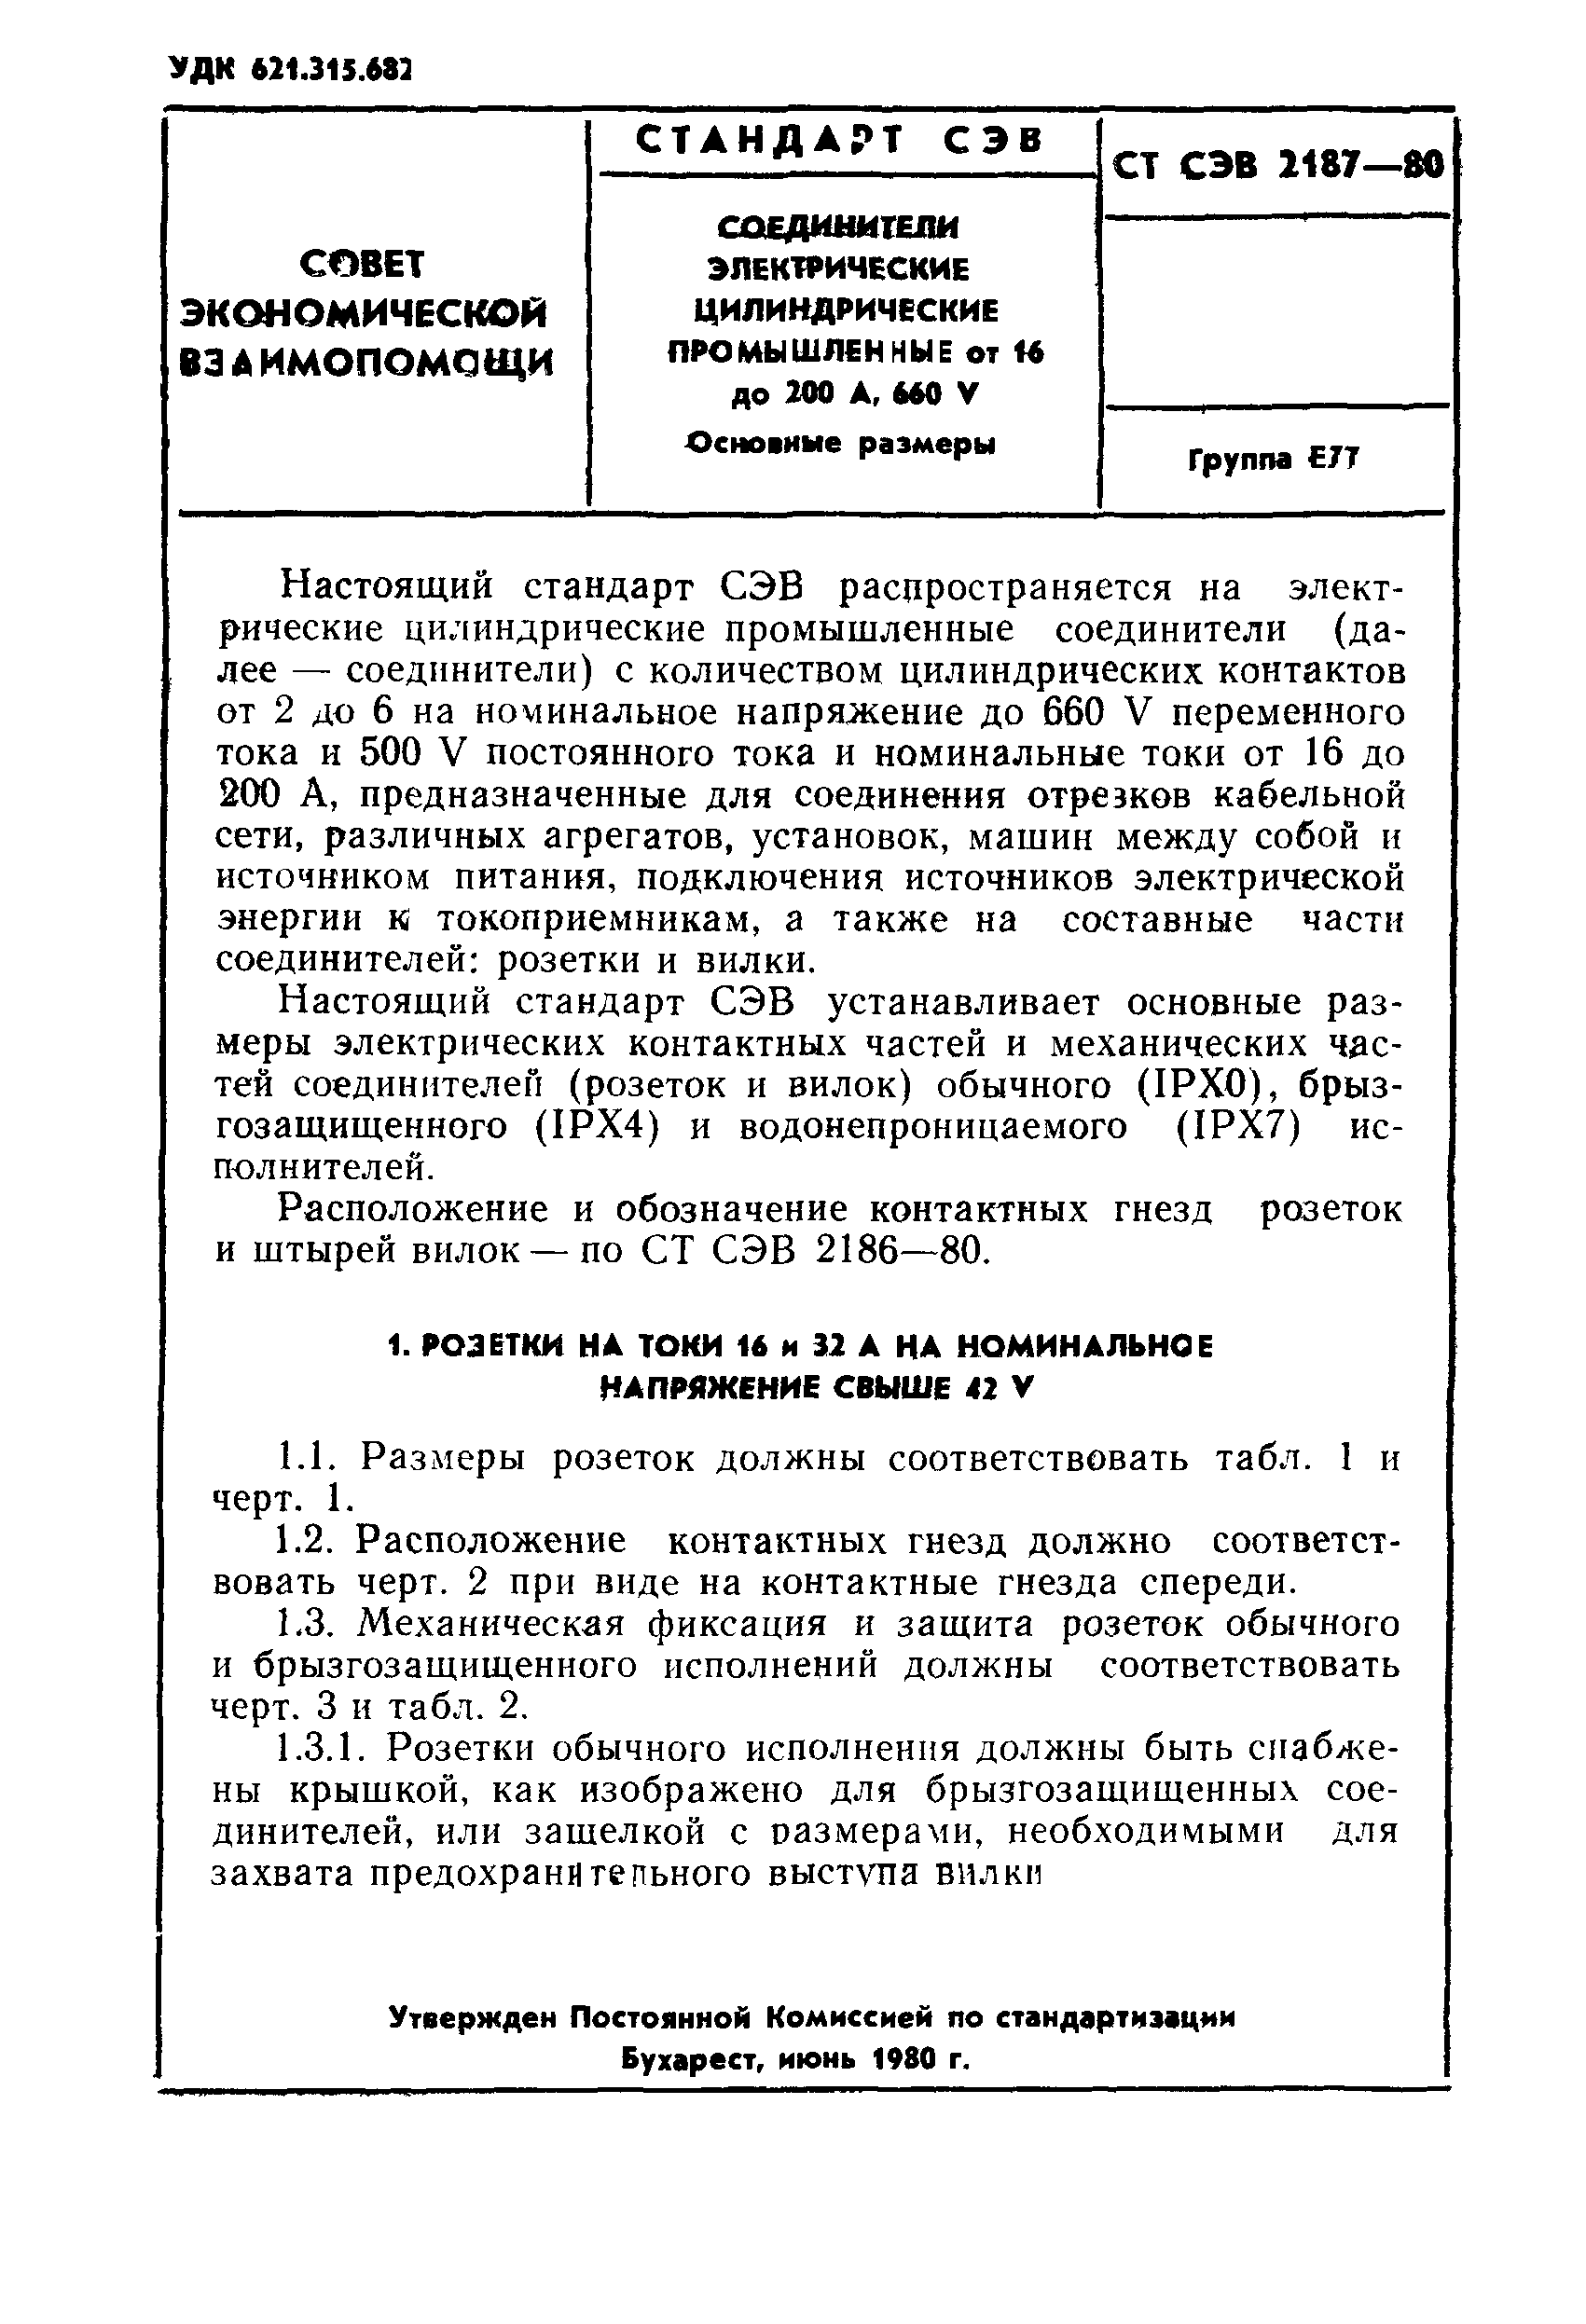 СТ СЭВ 2187-80